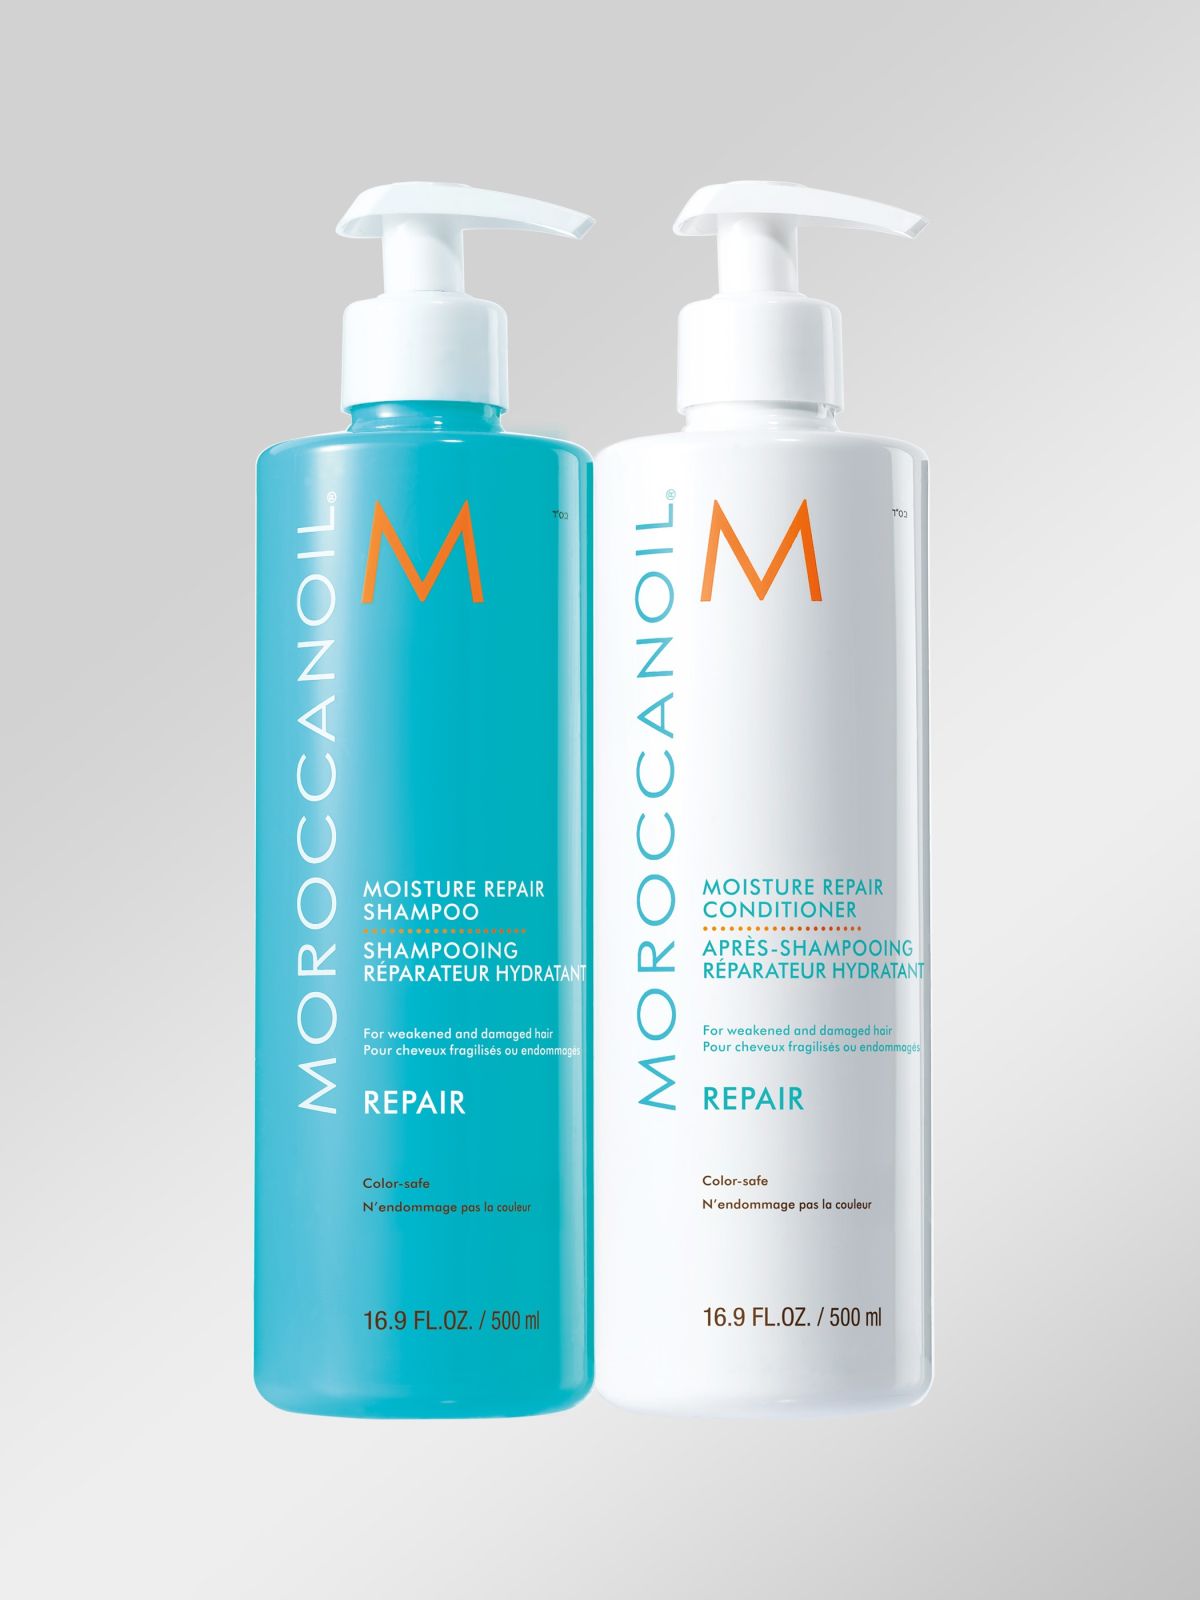  מארז שמפו ומרכך 500 מ״ל לשיקום השיער Duo Shampoo And Conditioner Repair של MOROCCANOIL